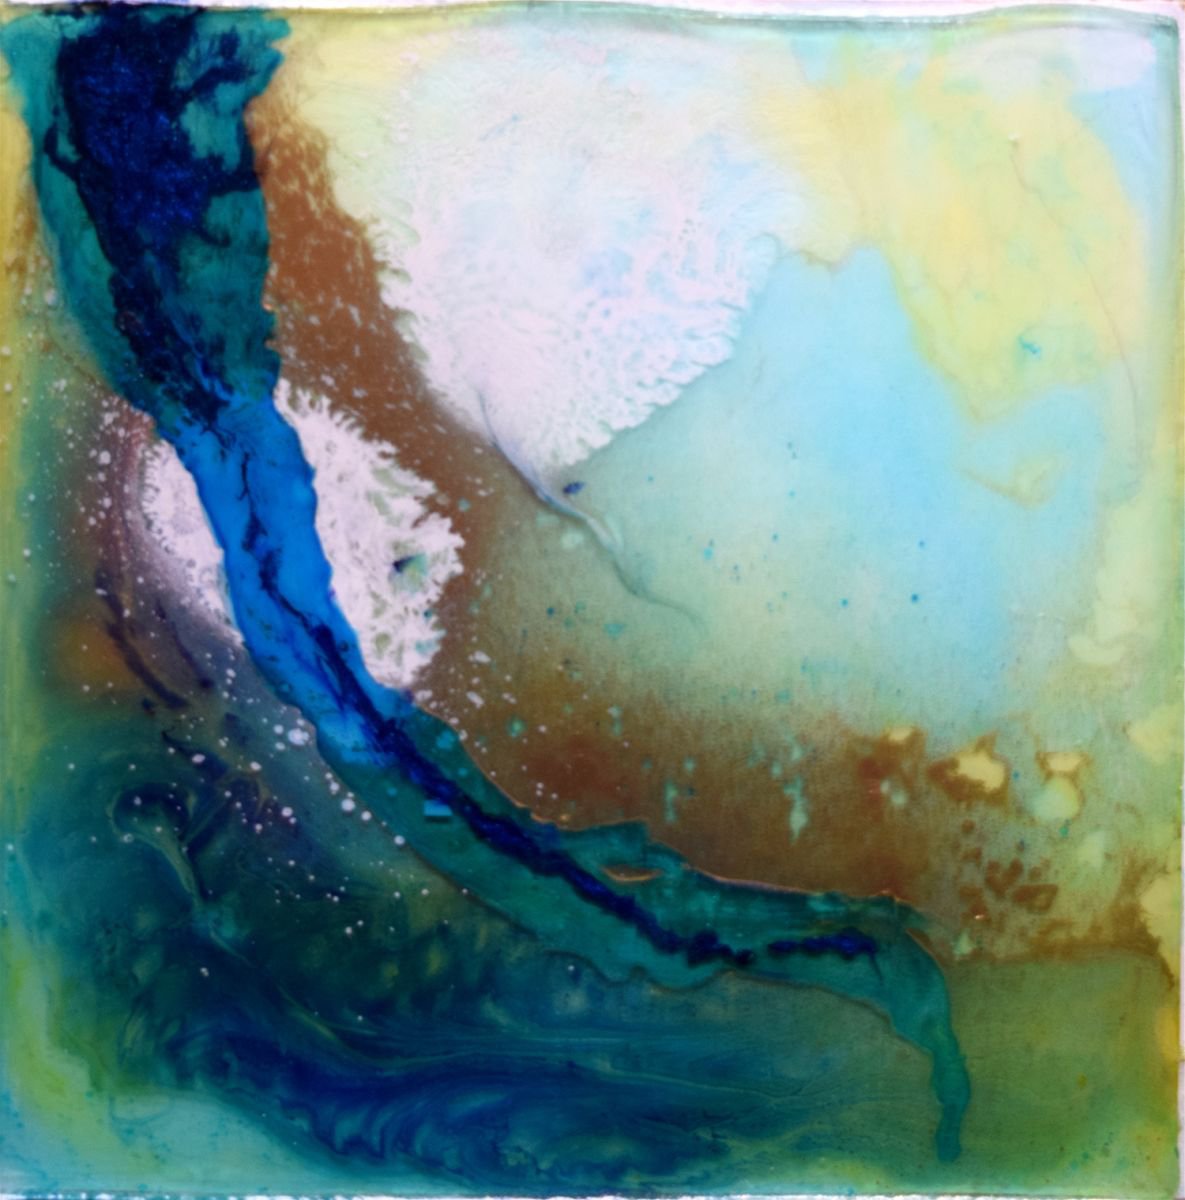 Series of Sand & Water VIII by Anna Sidi-Yacoub